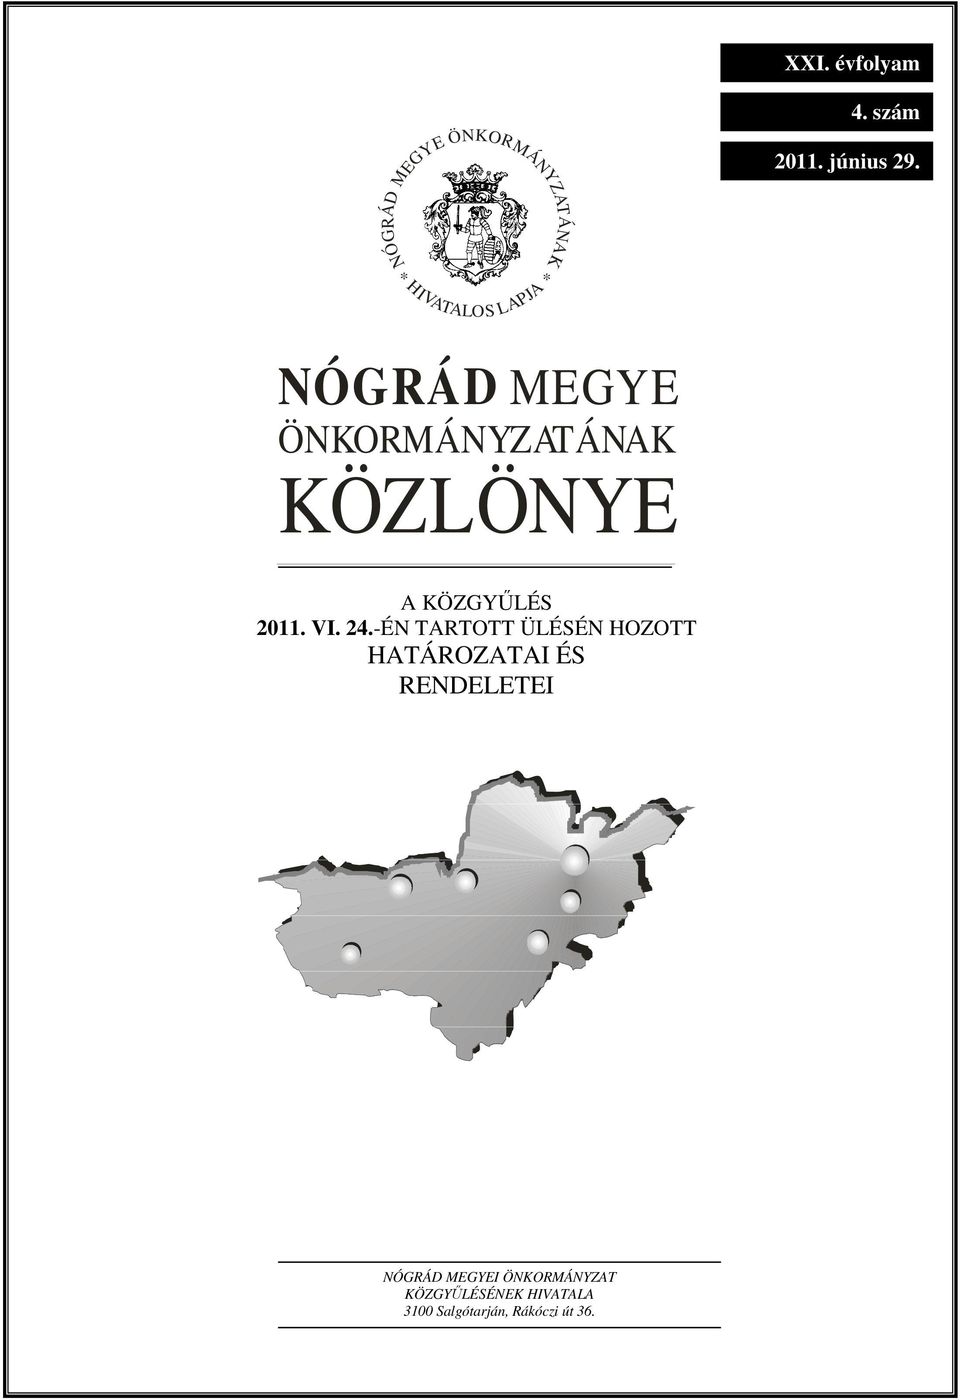 ÖNKORMÁNYZATÁNAK KÖZLÖNYE A KÖZGYŐLÉS 2011. VI. 24.